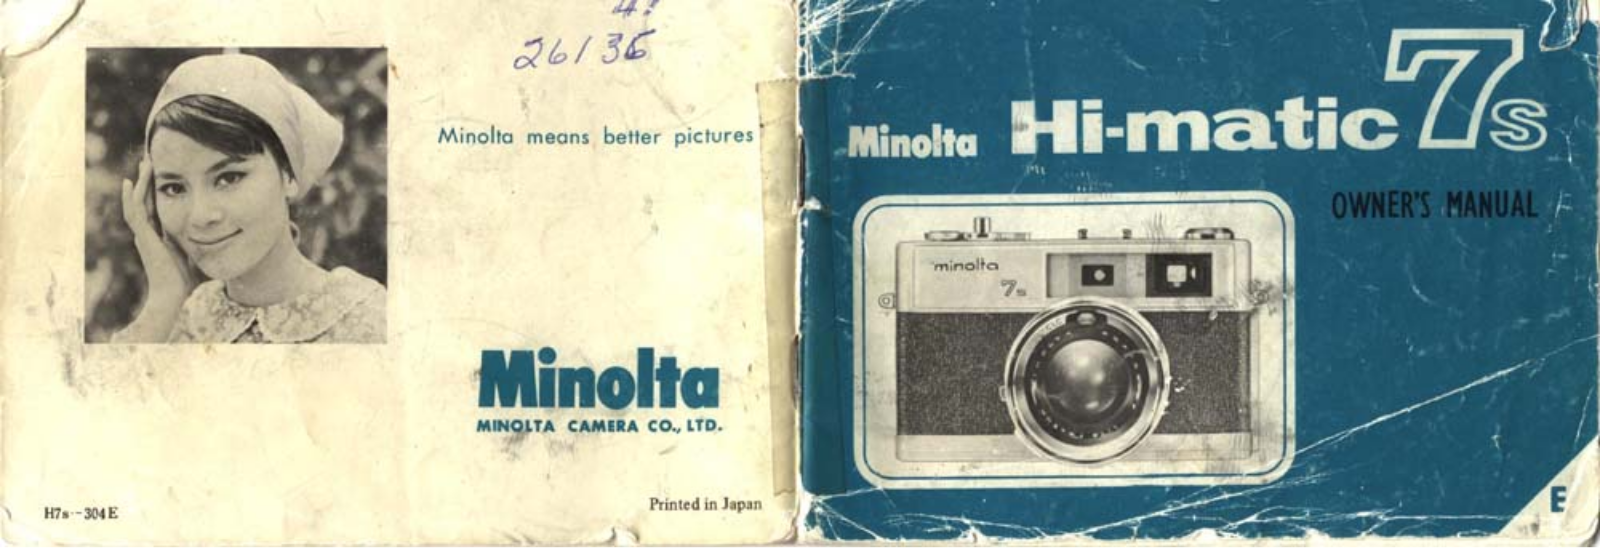 MINOLTA Hi-Matic 7S Owner's Manual